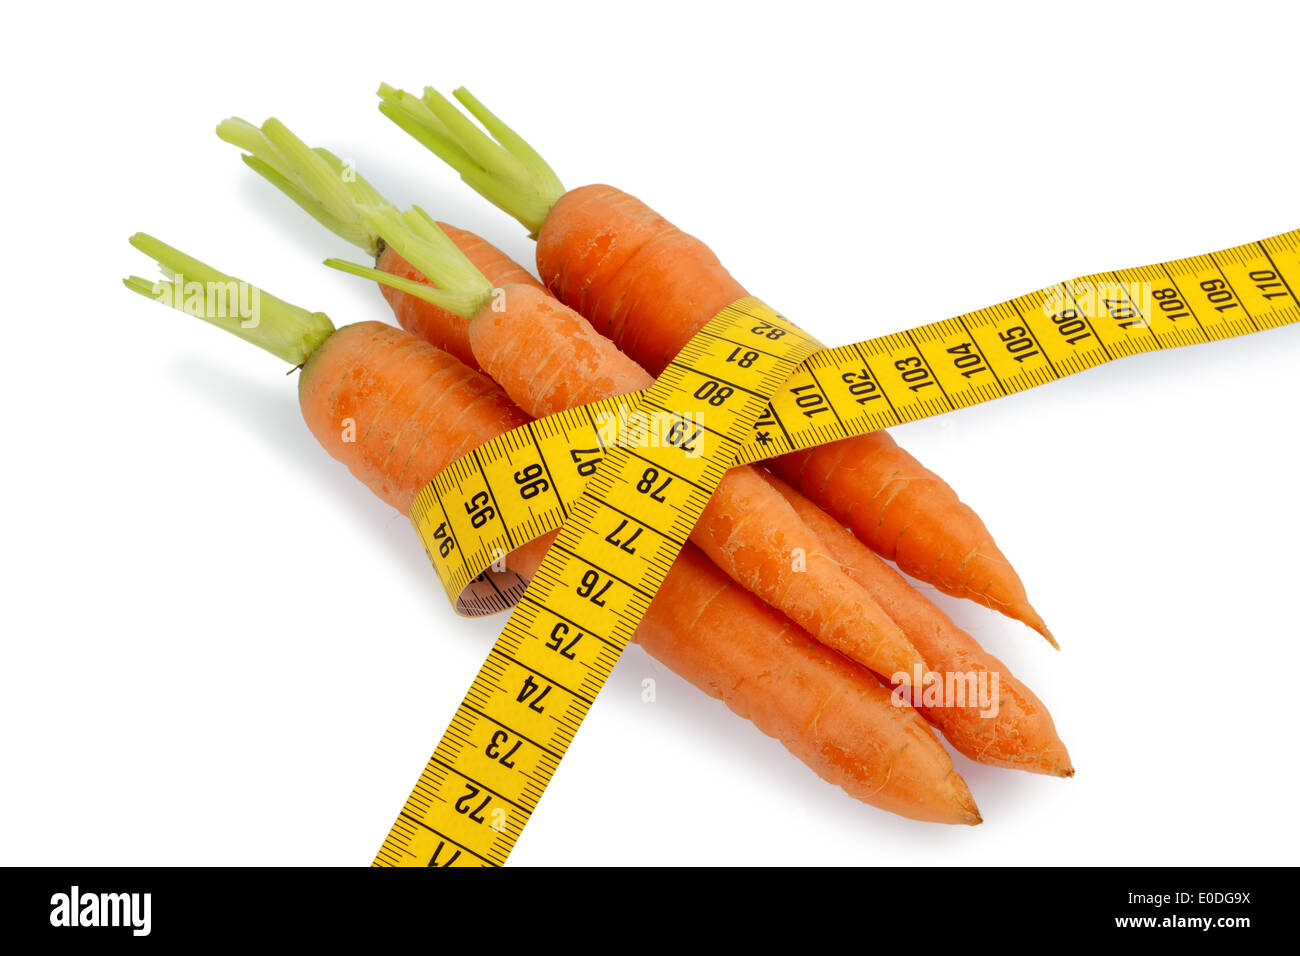 Karotten aus biologischem Anbau mit Dimension Klebeband. Frisches Obst und Gemüse ist immer gesund. Symbolische Foto für Gesundheit Stockfoto